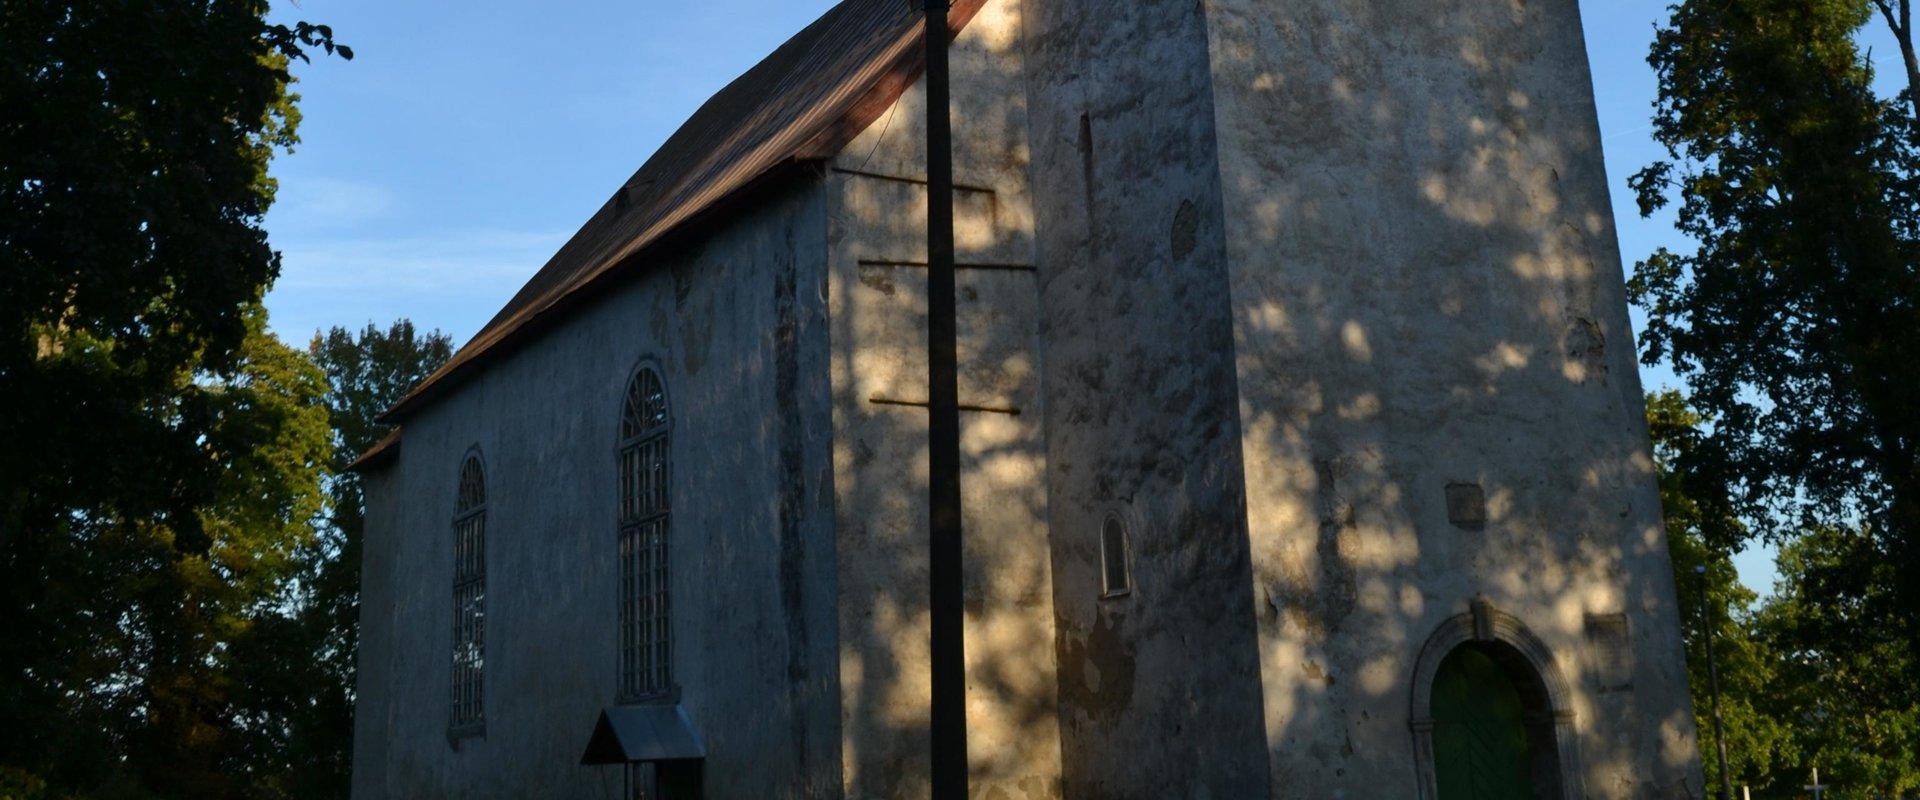 Lēne-Nigulas baznīca